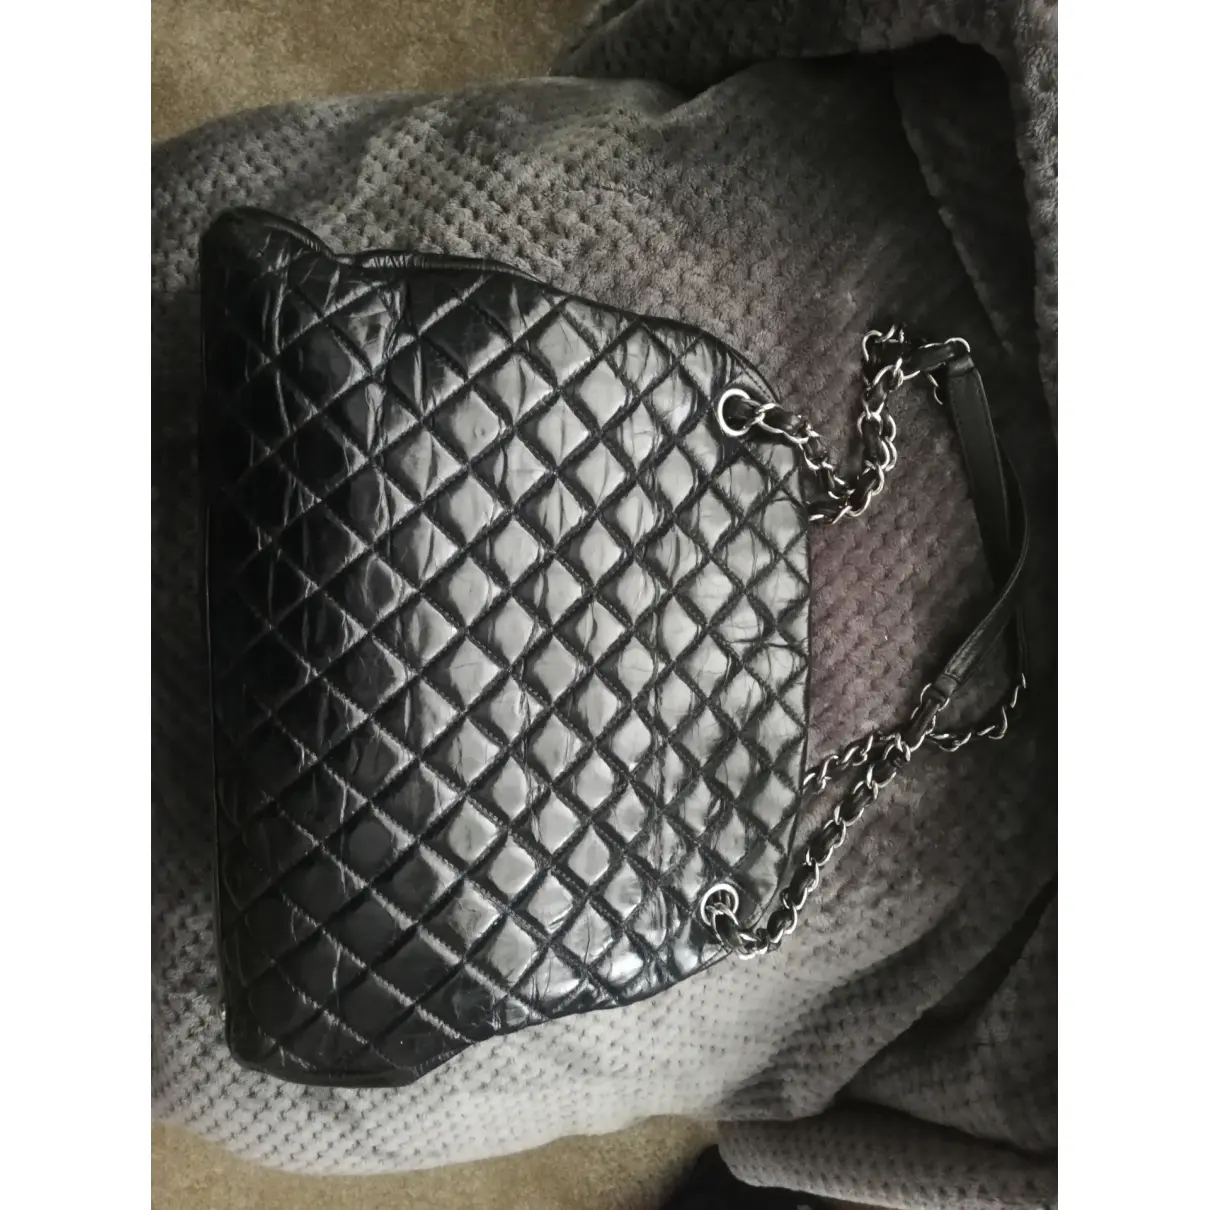 Mademoiselle leather handbag Chanel - Vintage